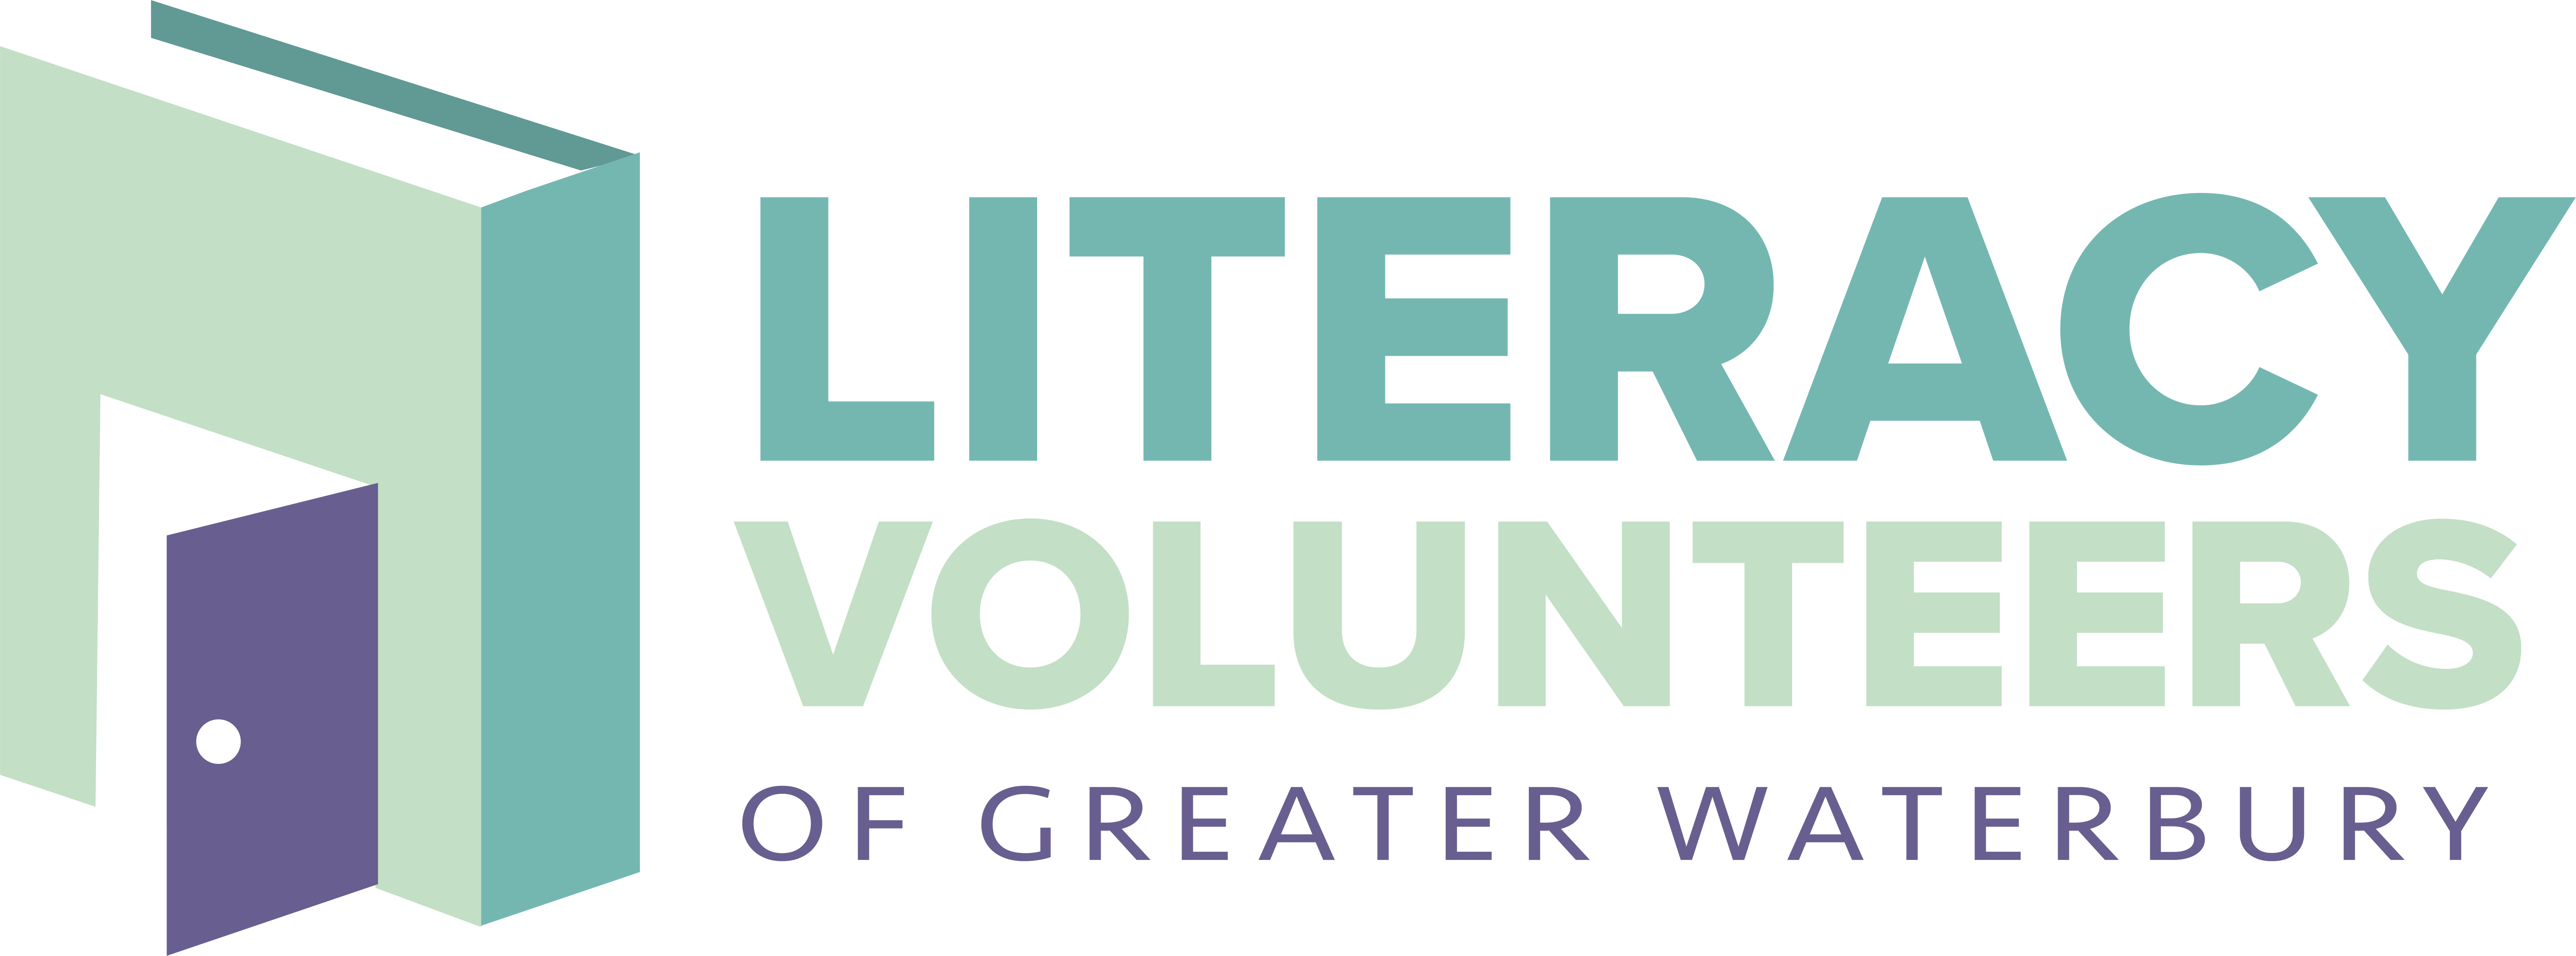 Literacy Volunteers of Greater Waterbury, Inc. logo